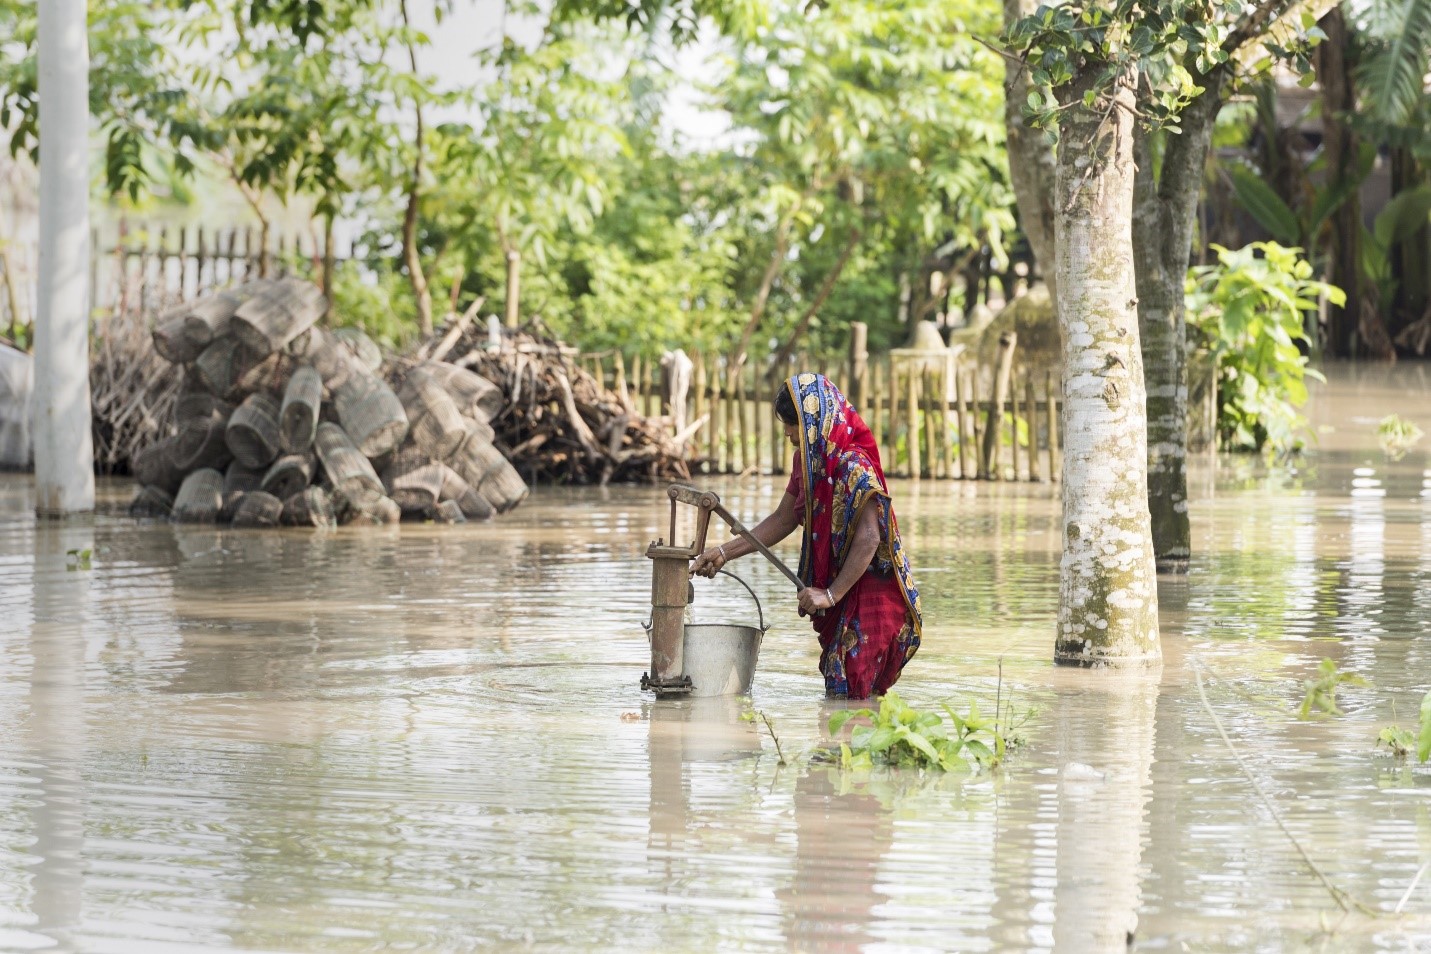 امرأة تجلب المياه في أعقاب الفيضانات العارمة التي ضربت منطقة كوريجرام في بنجلادش. صورة: برنامج الأغذية العالمي/سيد عاصف محمود